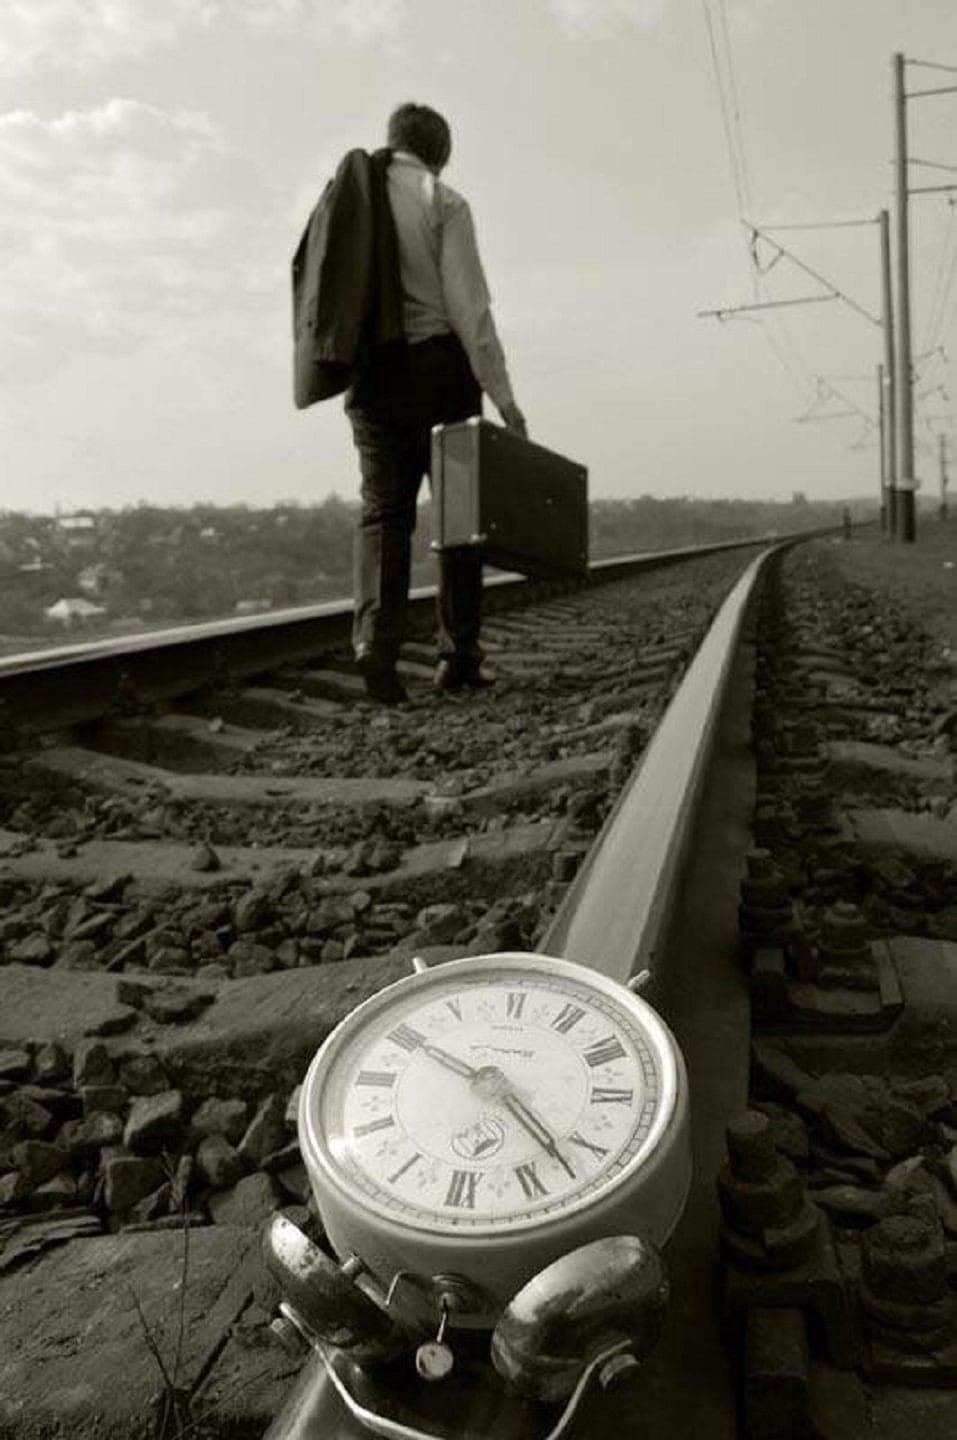 Иду ровно по жизни. Уходящий поезд. Поезд ушел. Опоздал на поезд. Жизнь уходит.